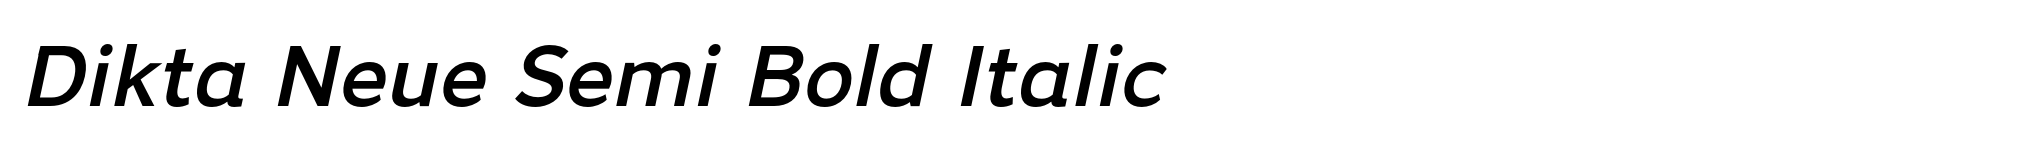 Dikta Neue Semi Bold Italic image